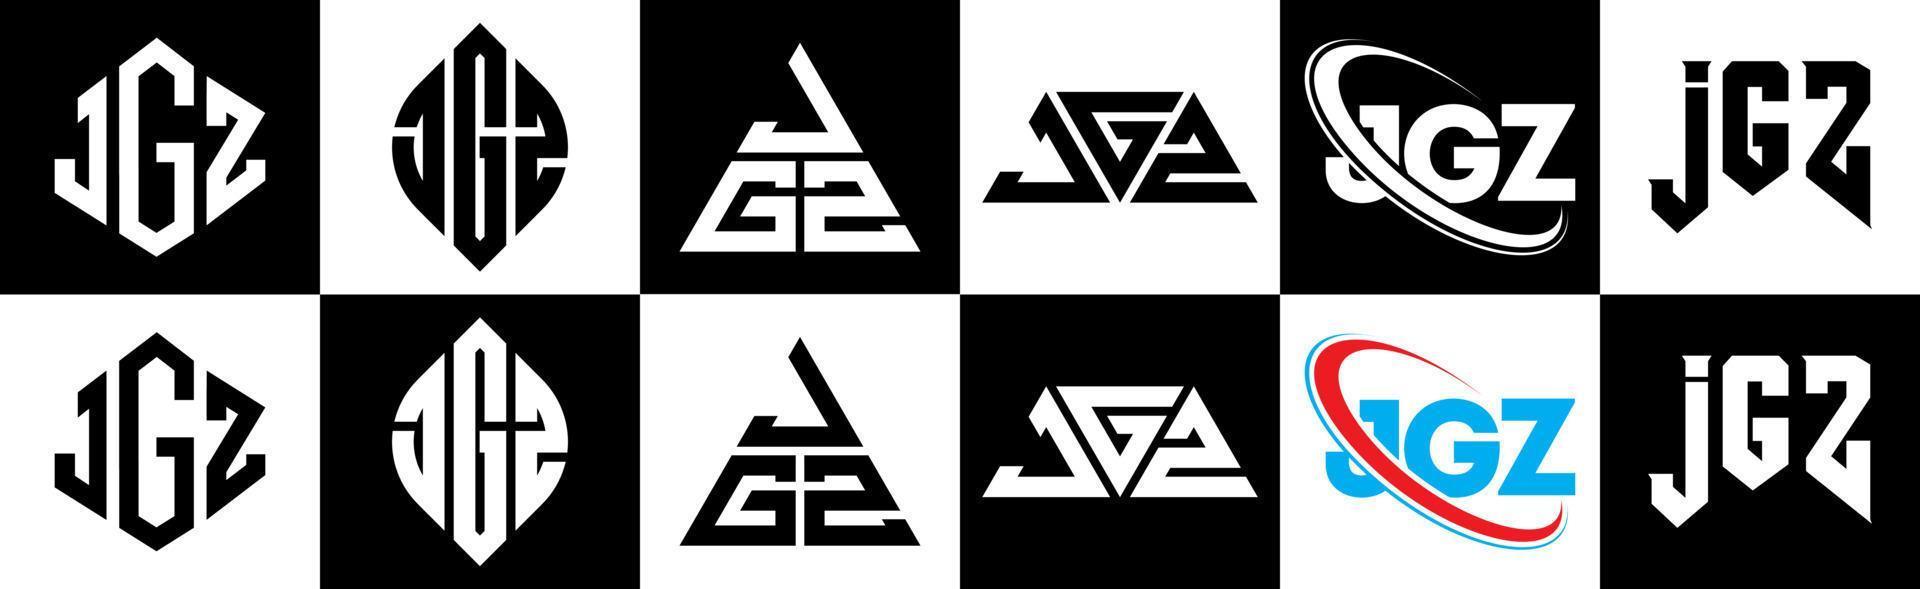 création de logo de lettre jgz en six styles. jgz polygone, cercle, triangle, hexagone, style plat et simple avec logo de lettre de variation de couleur noir et blanc dans un plan de travail. logo jgz minimaliste et classique vecteur